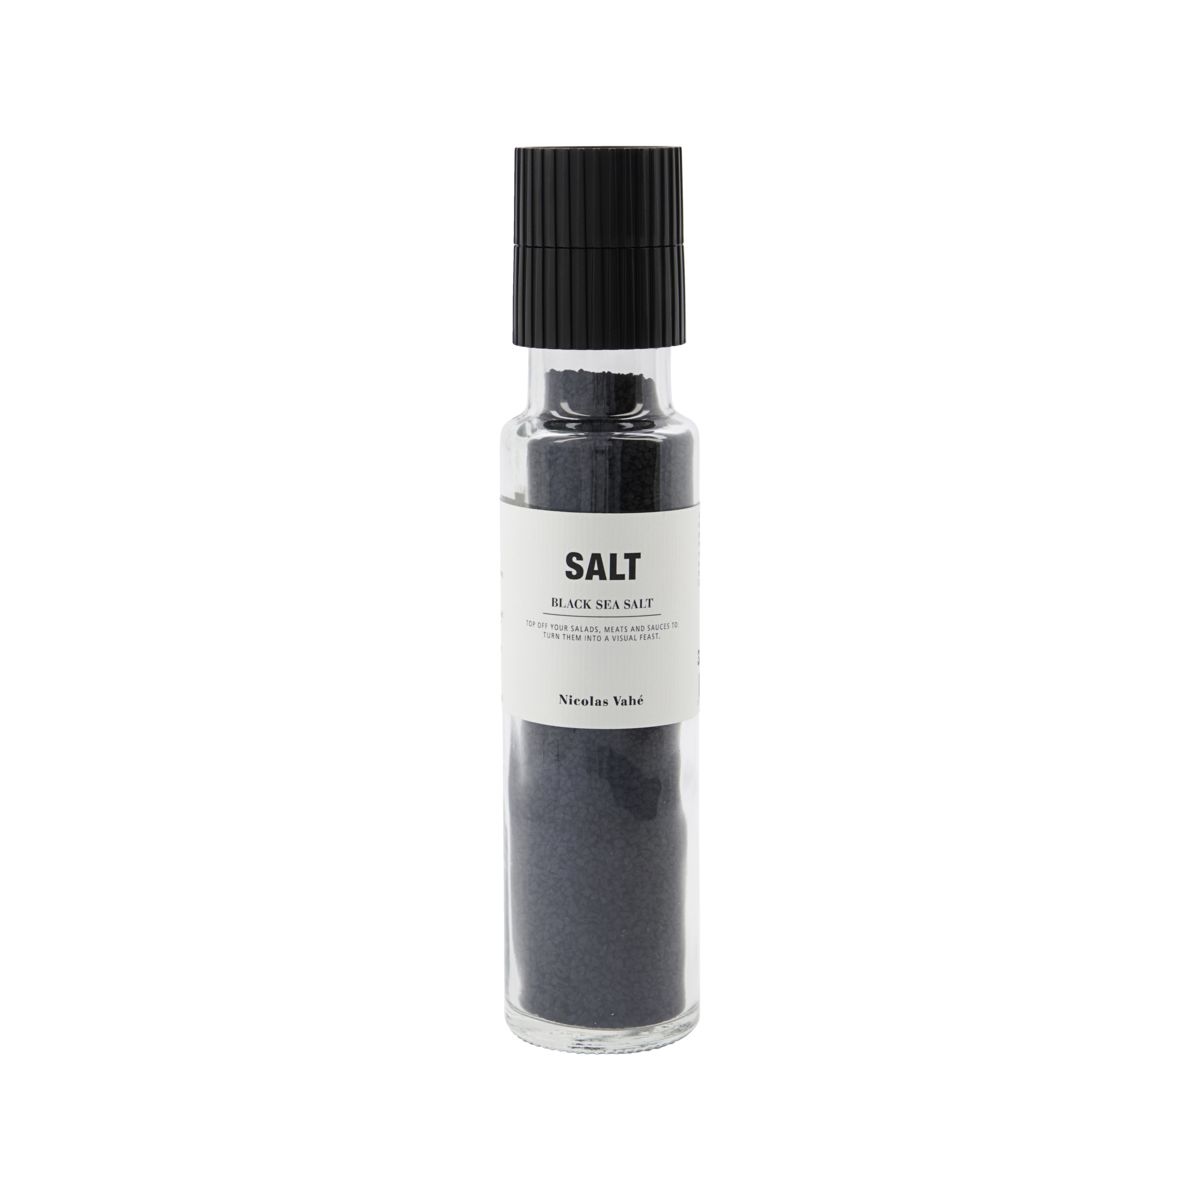 Černá sůl 320 g SALT Nicolas Vahé